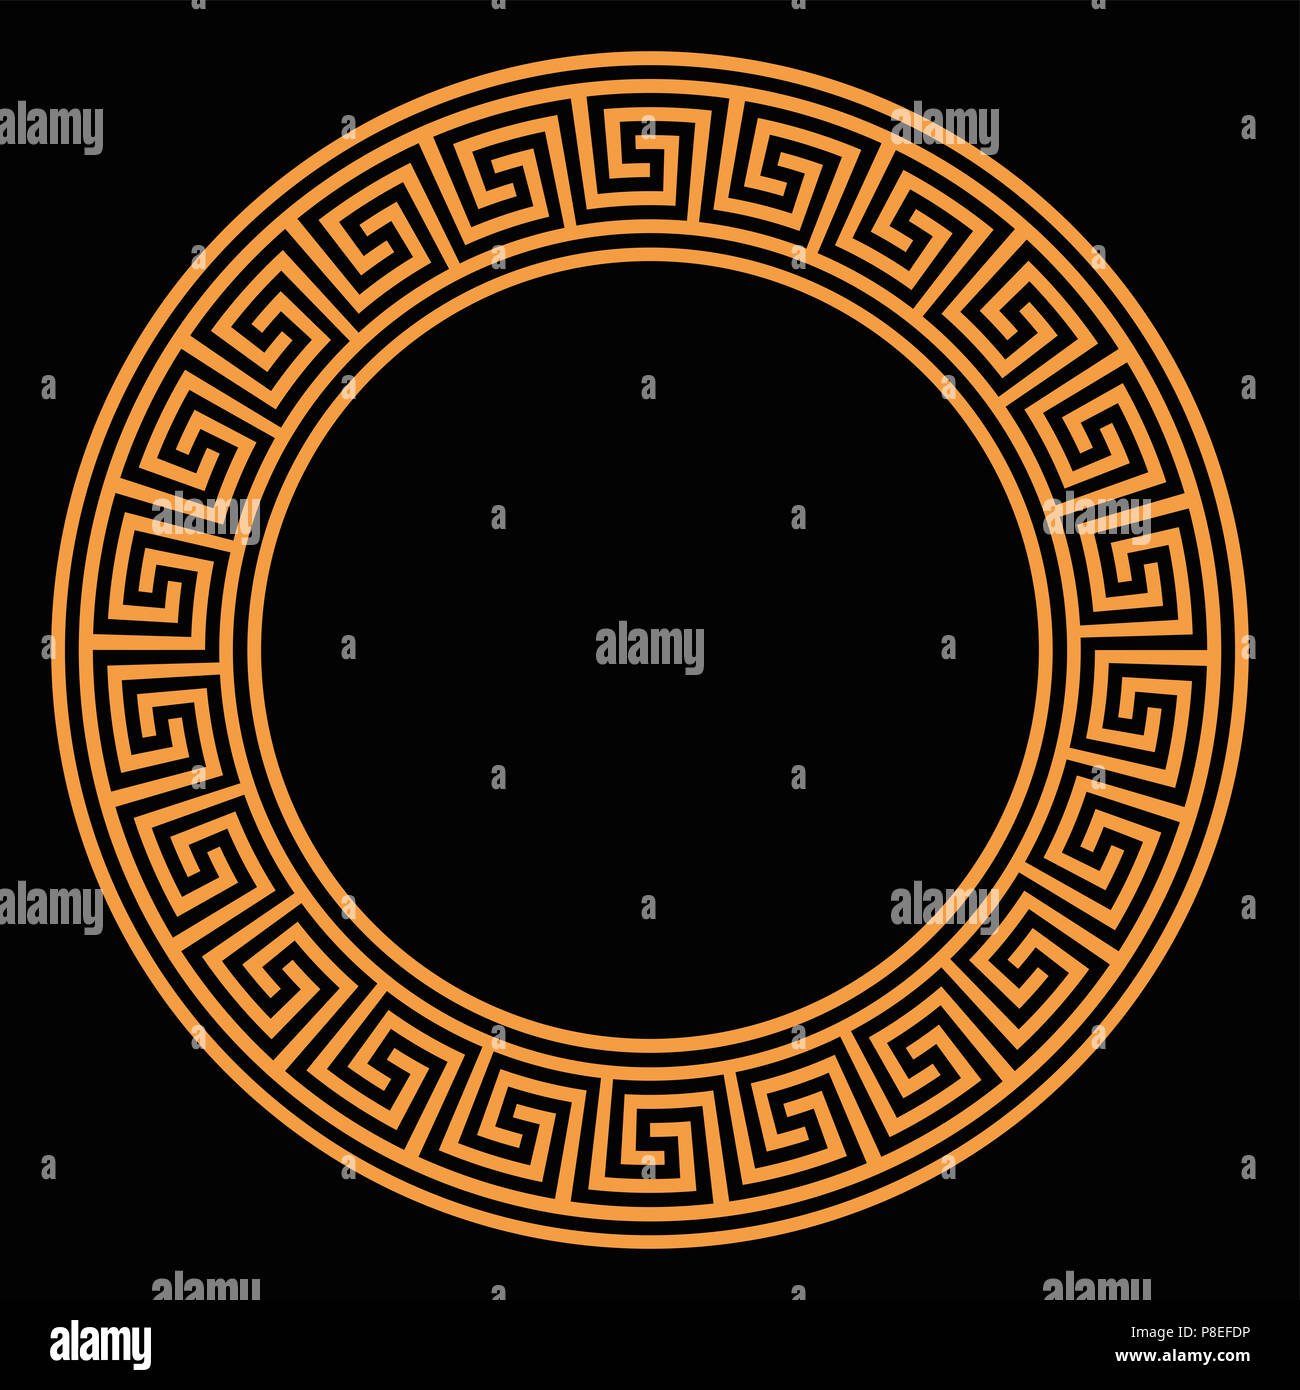 Ring mit nahtloser Mäander Muster auf schwarzen Hintergrund. Orange meandros, eine dekorative Grenze, aus Linien, in ein wiederholtes Motiv und Gestaltung geprägt. Stockfoto